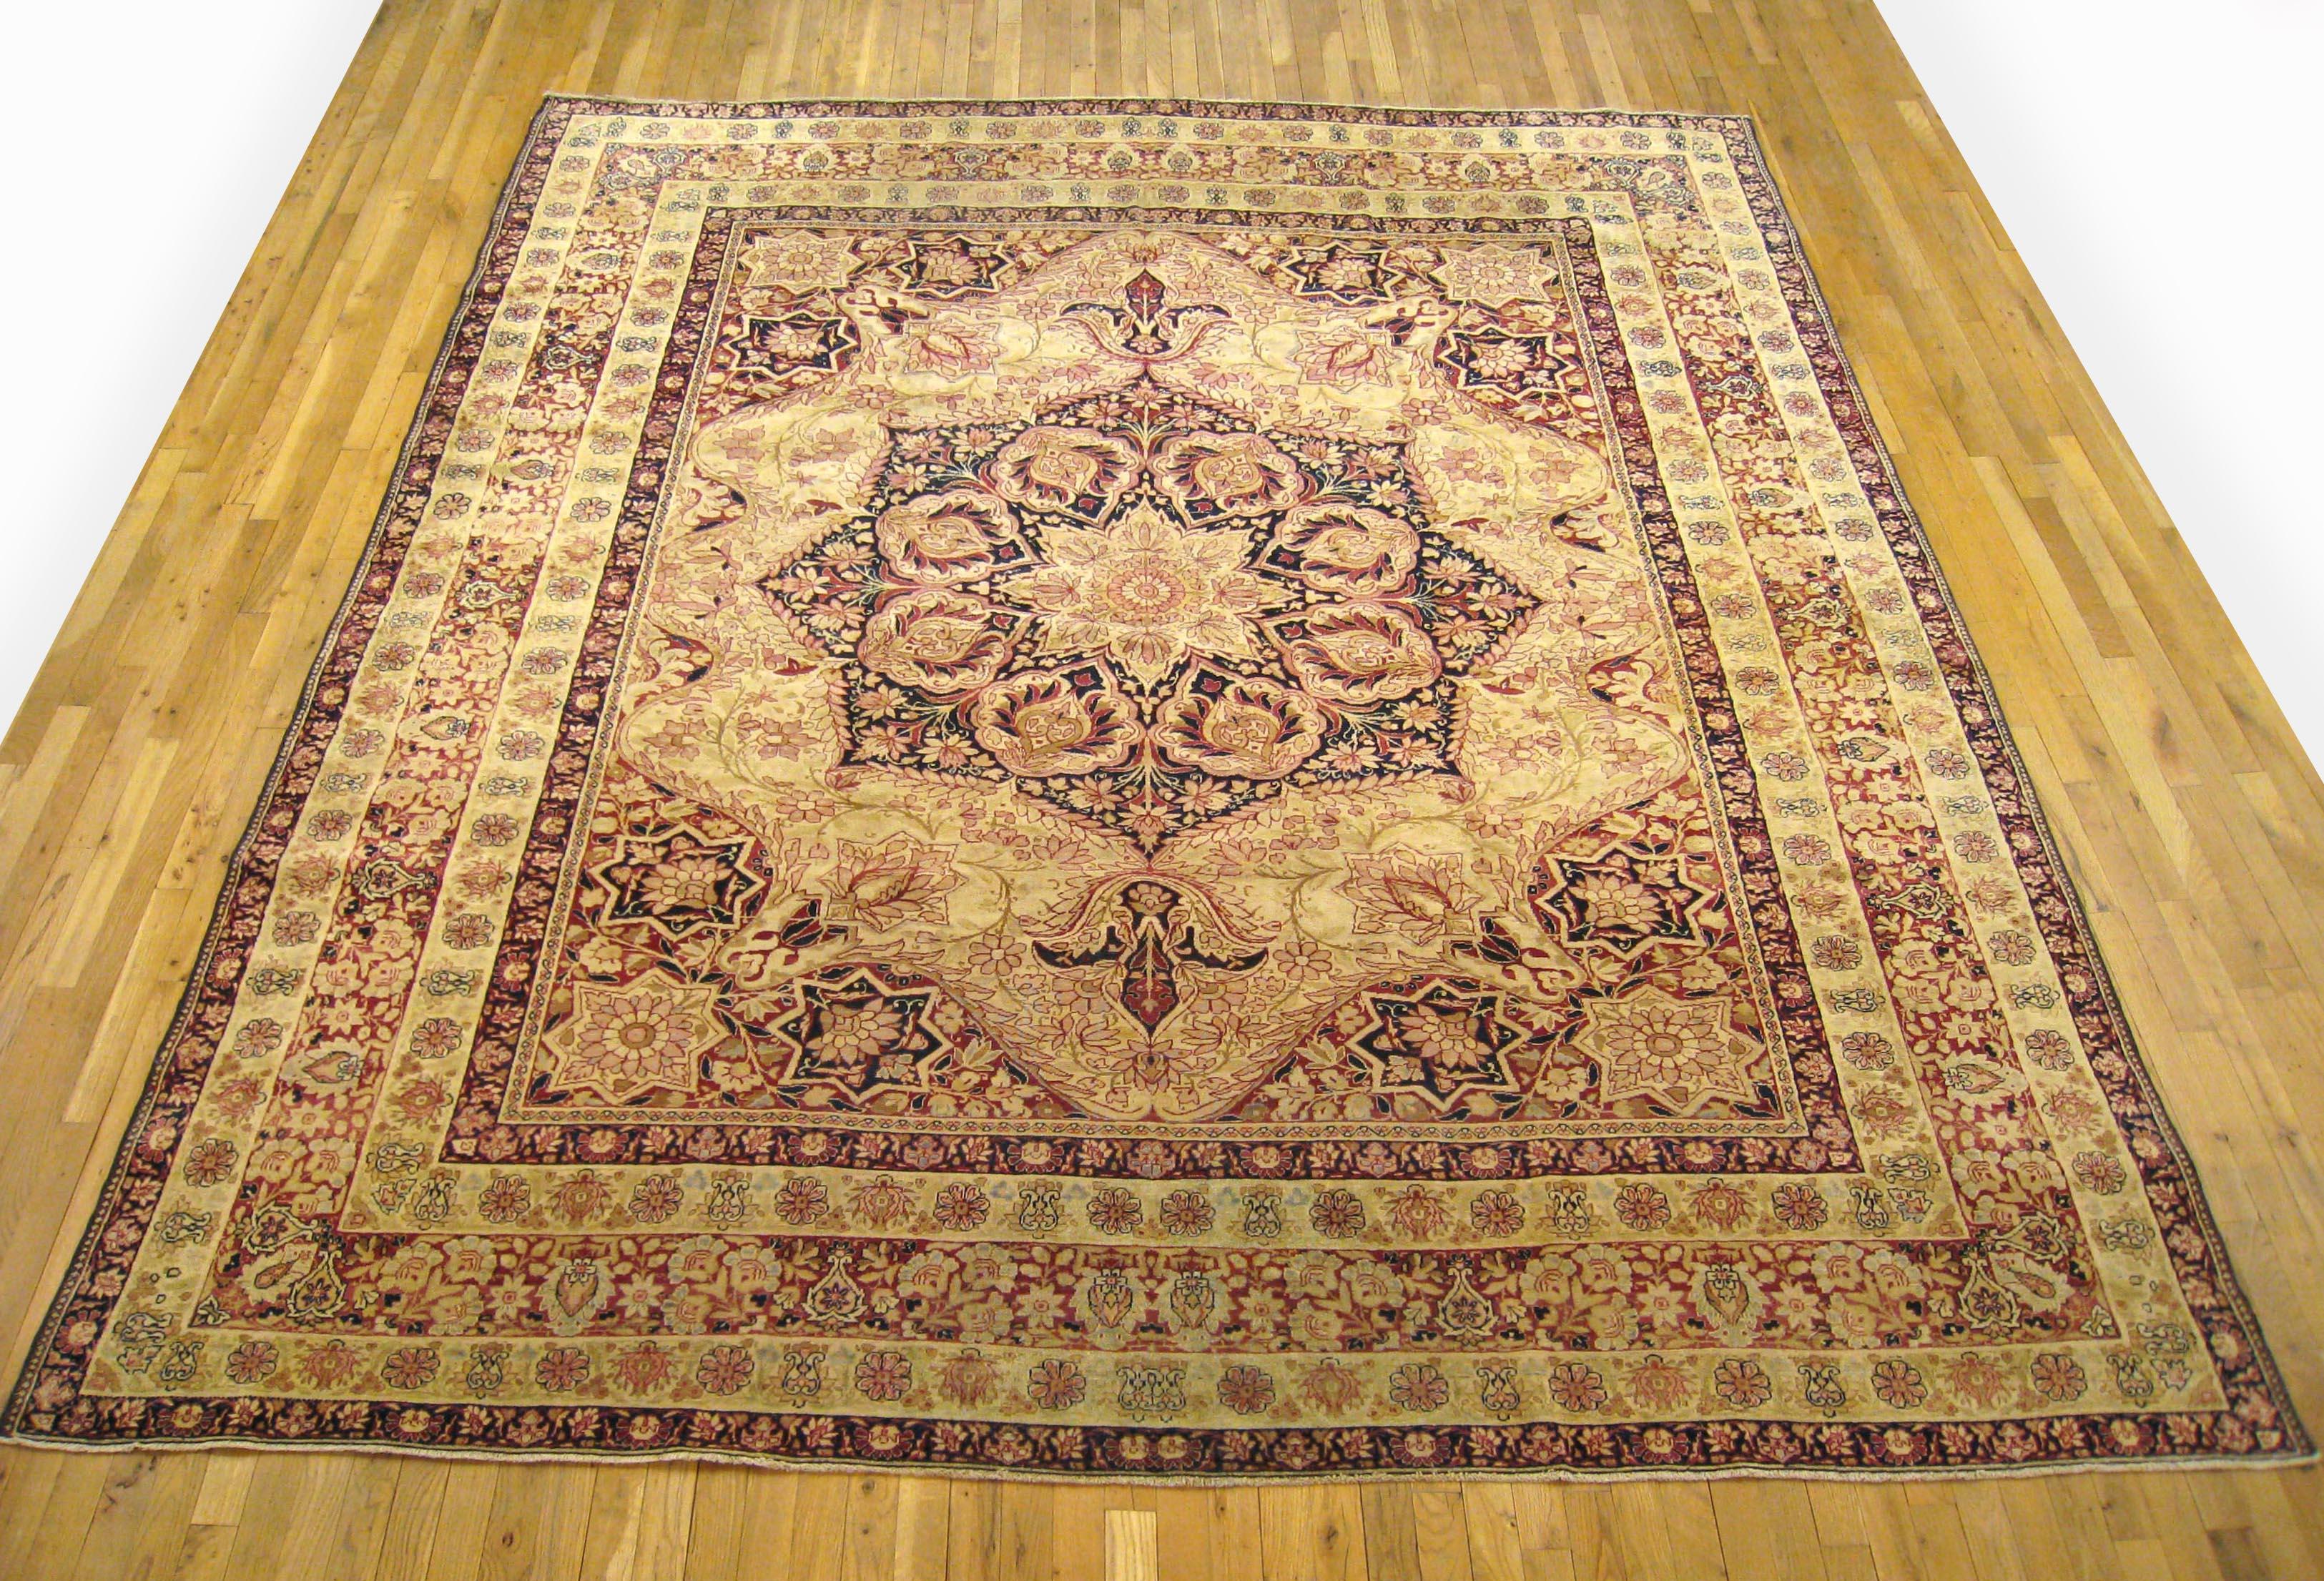 Antique Persian Lavar Oriental carpet, room size, circa 1890.

An antique Persian Lavar oriental carpet, size: 10'5